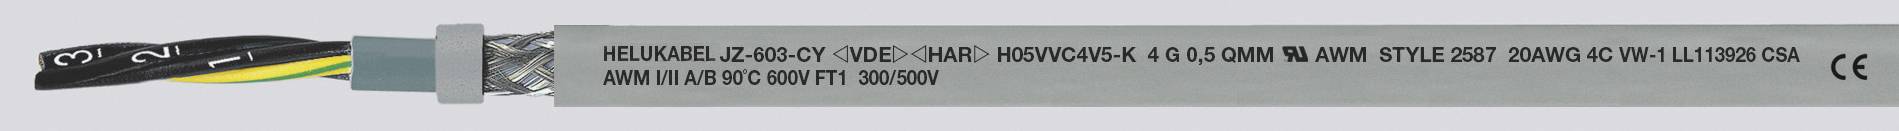 HELUKABEL JZ-603-CY Steuerleitung 4 G 0.50 mm² Grau 83721-1000 1000 m